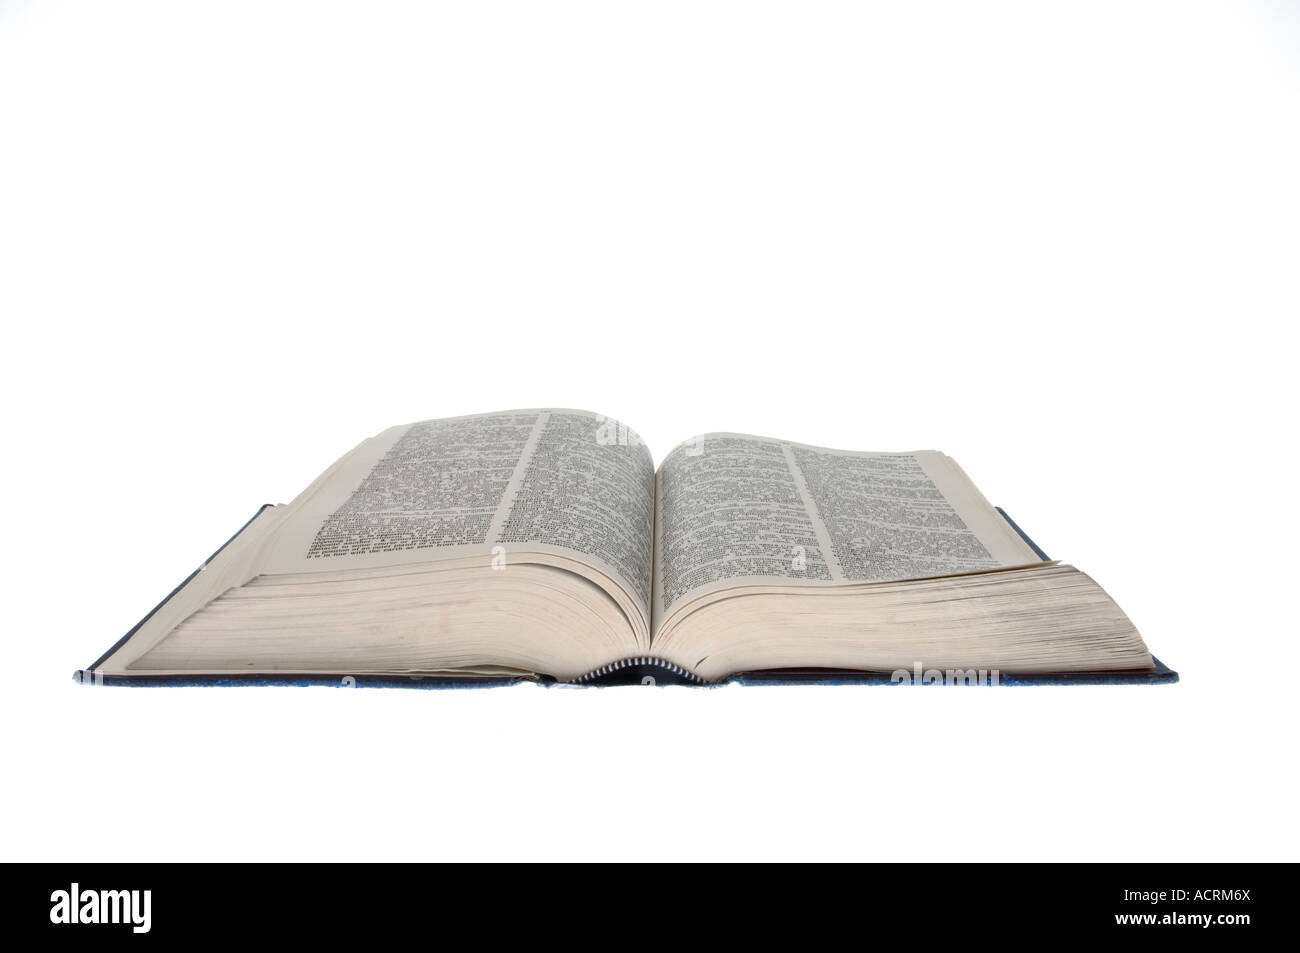 Ein offenes Wörterbuch auf einer weißen Fläche - ein offenes Buch Stockfoto